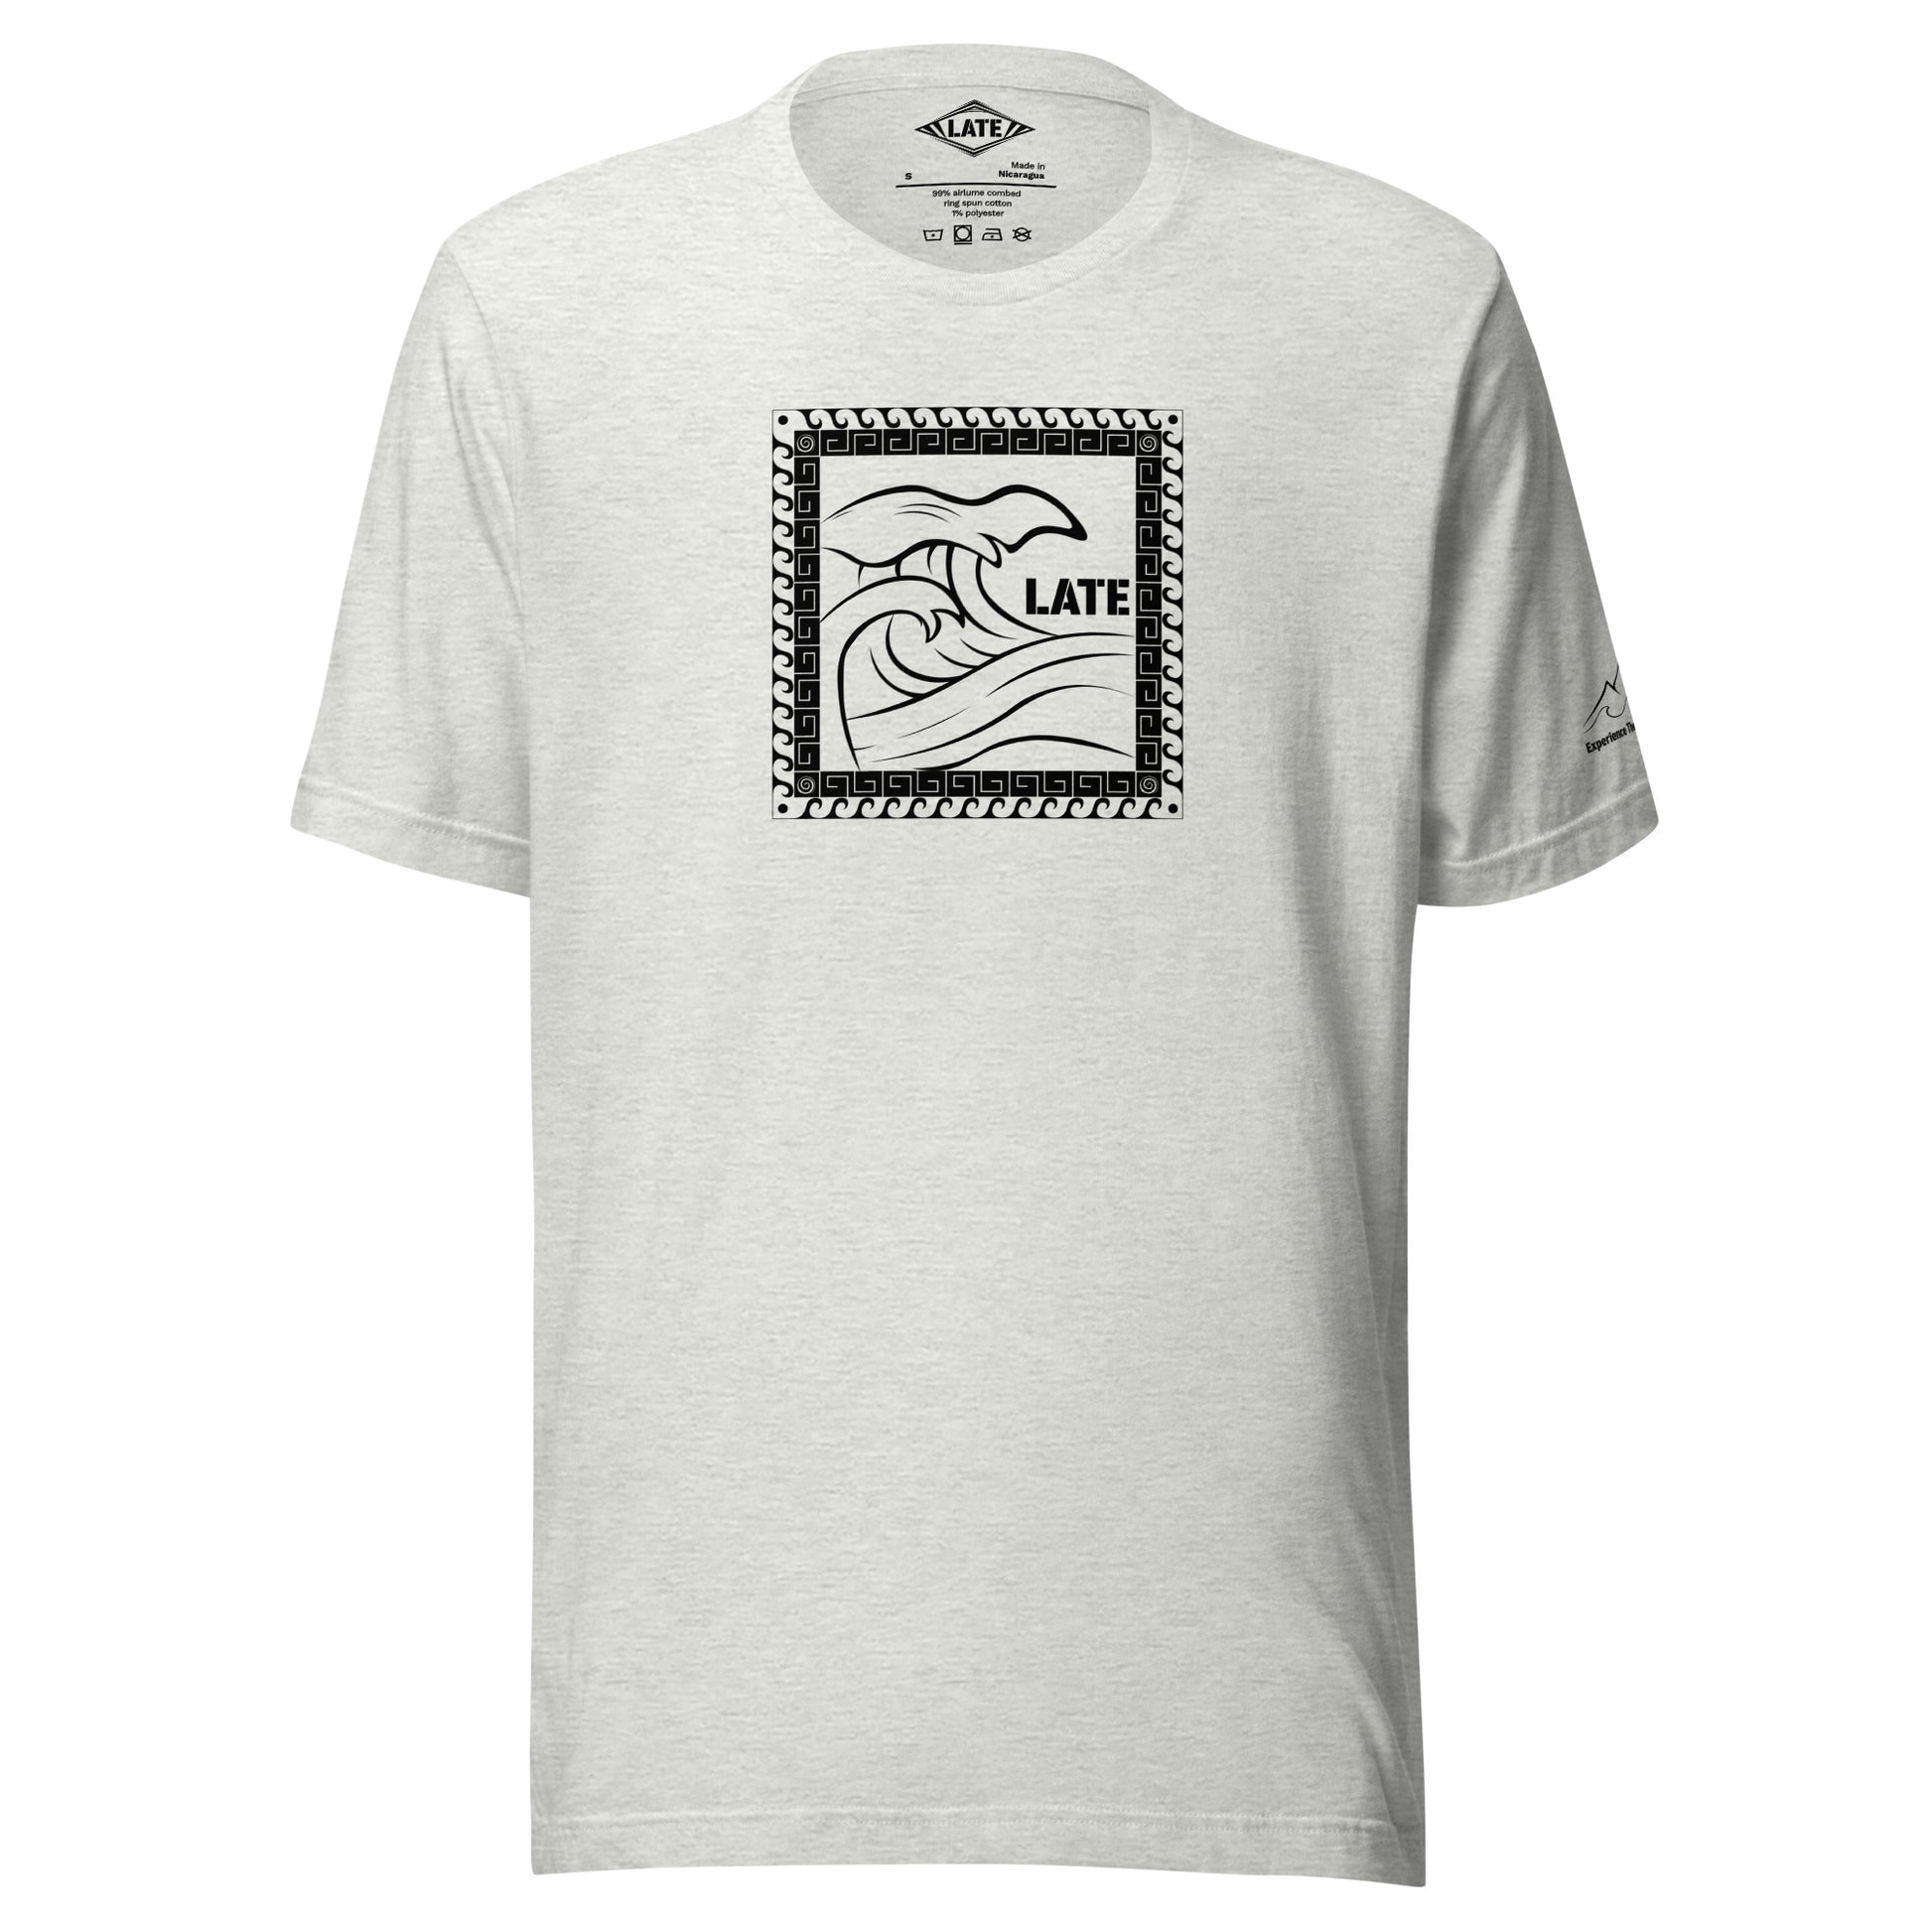 T-Shirt Tricky Wave design vague japonnaise et contour maori texte Late marque de vetement de surf. Tshirt unisex couleur gris